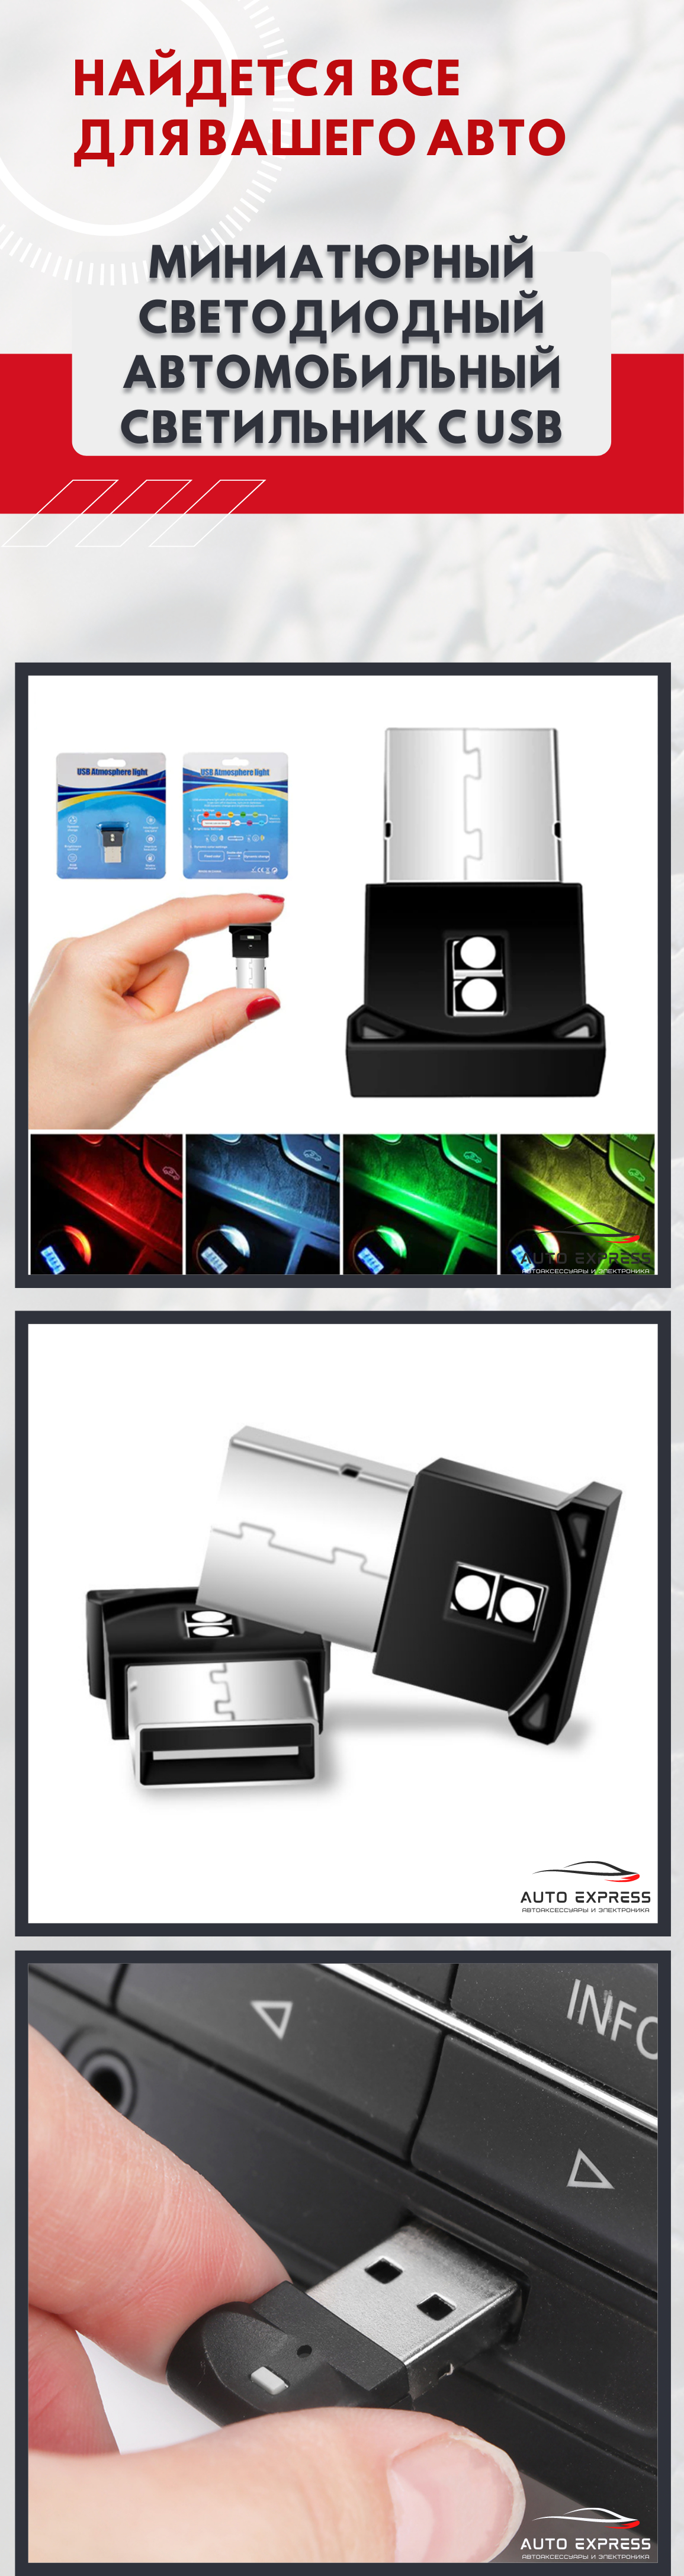 Миниатюрный светодиодный автомобильный светильник с USB за 179 ₽  .